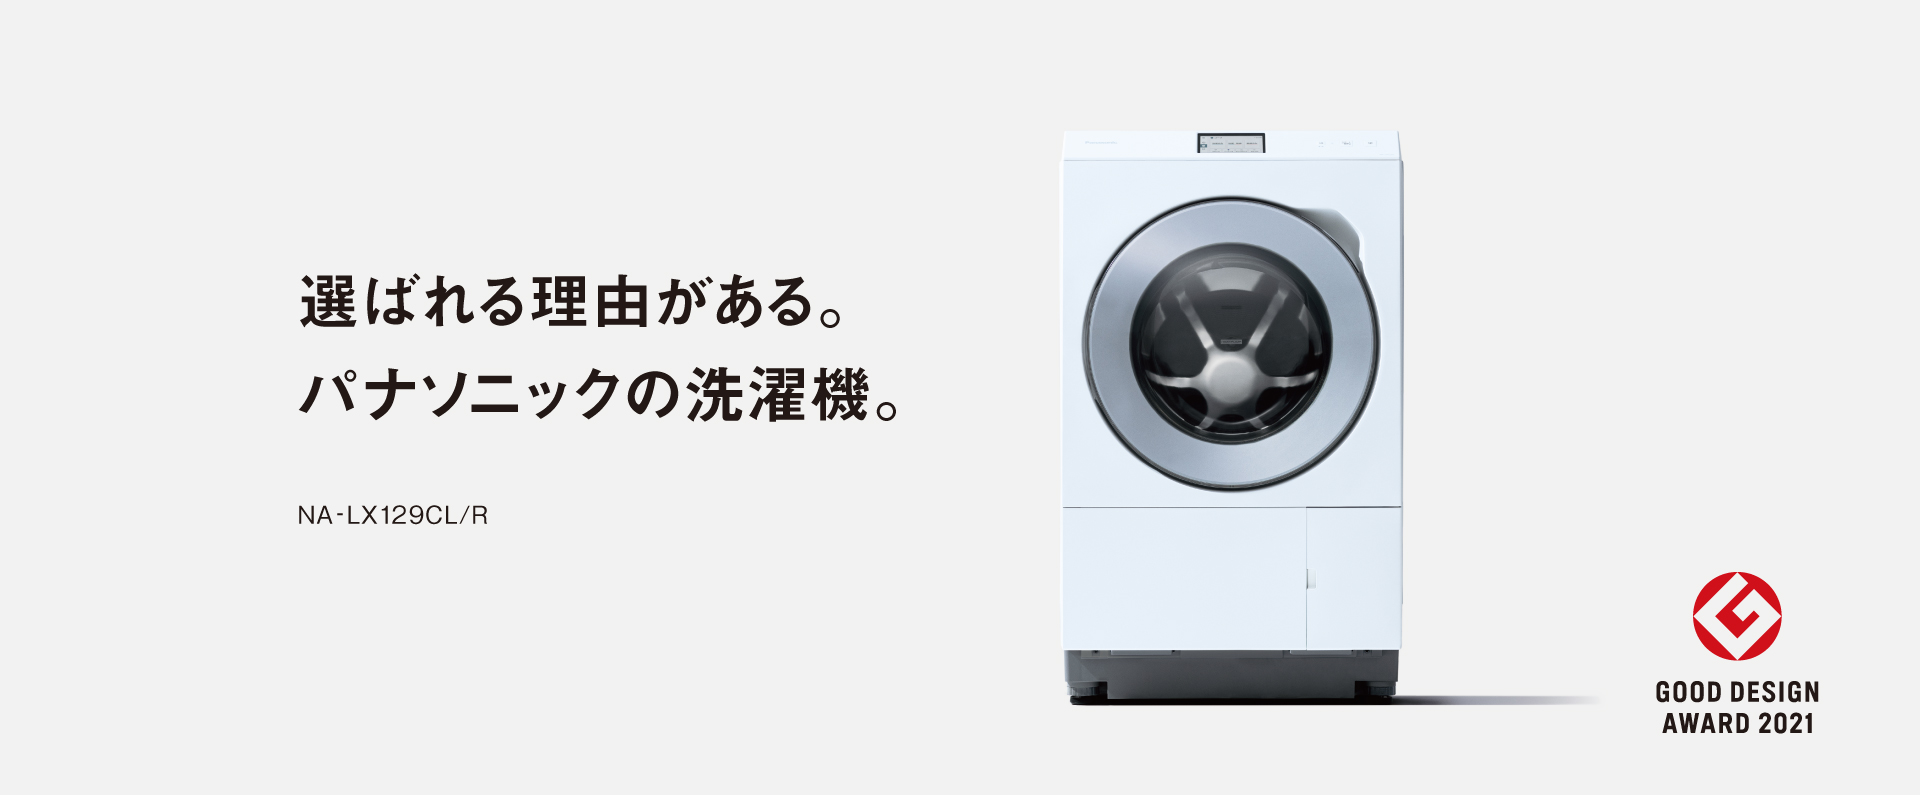 カテゴリー概要 | 洗濯機・衣類乾燥機 | Panasonic